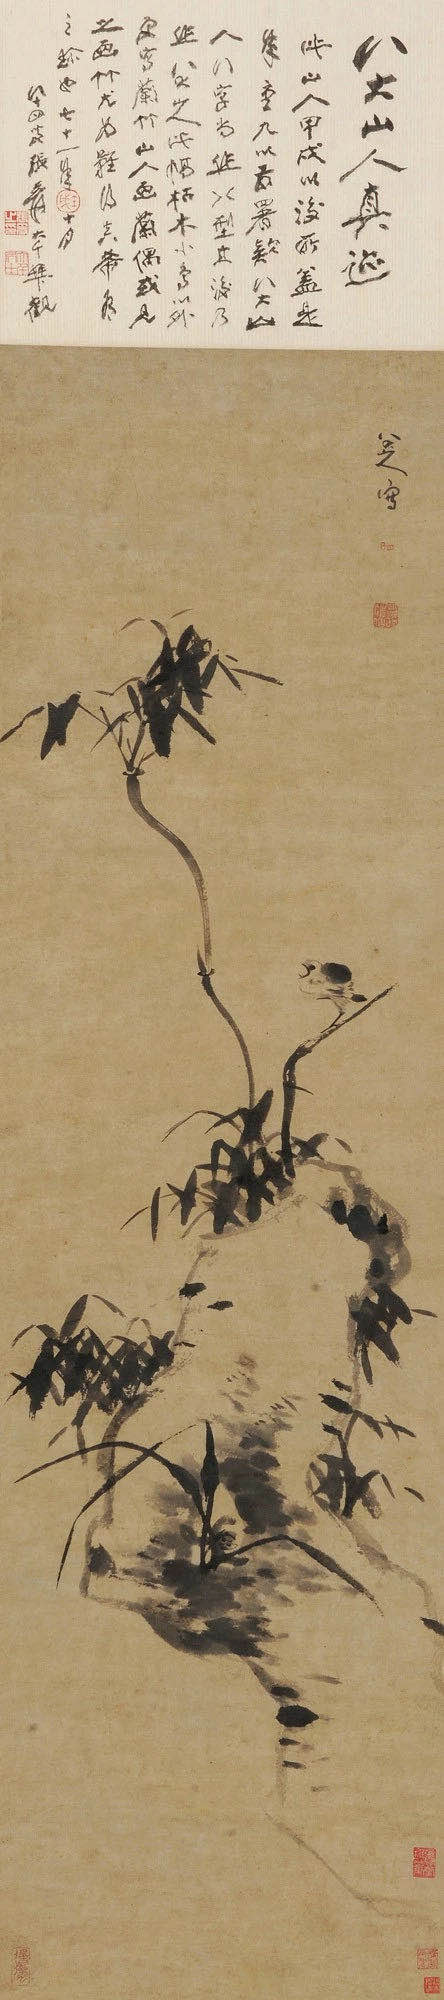 兰竹巨石灵鸟图.jpg